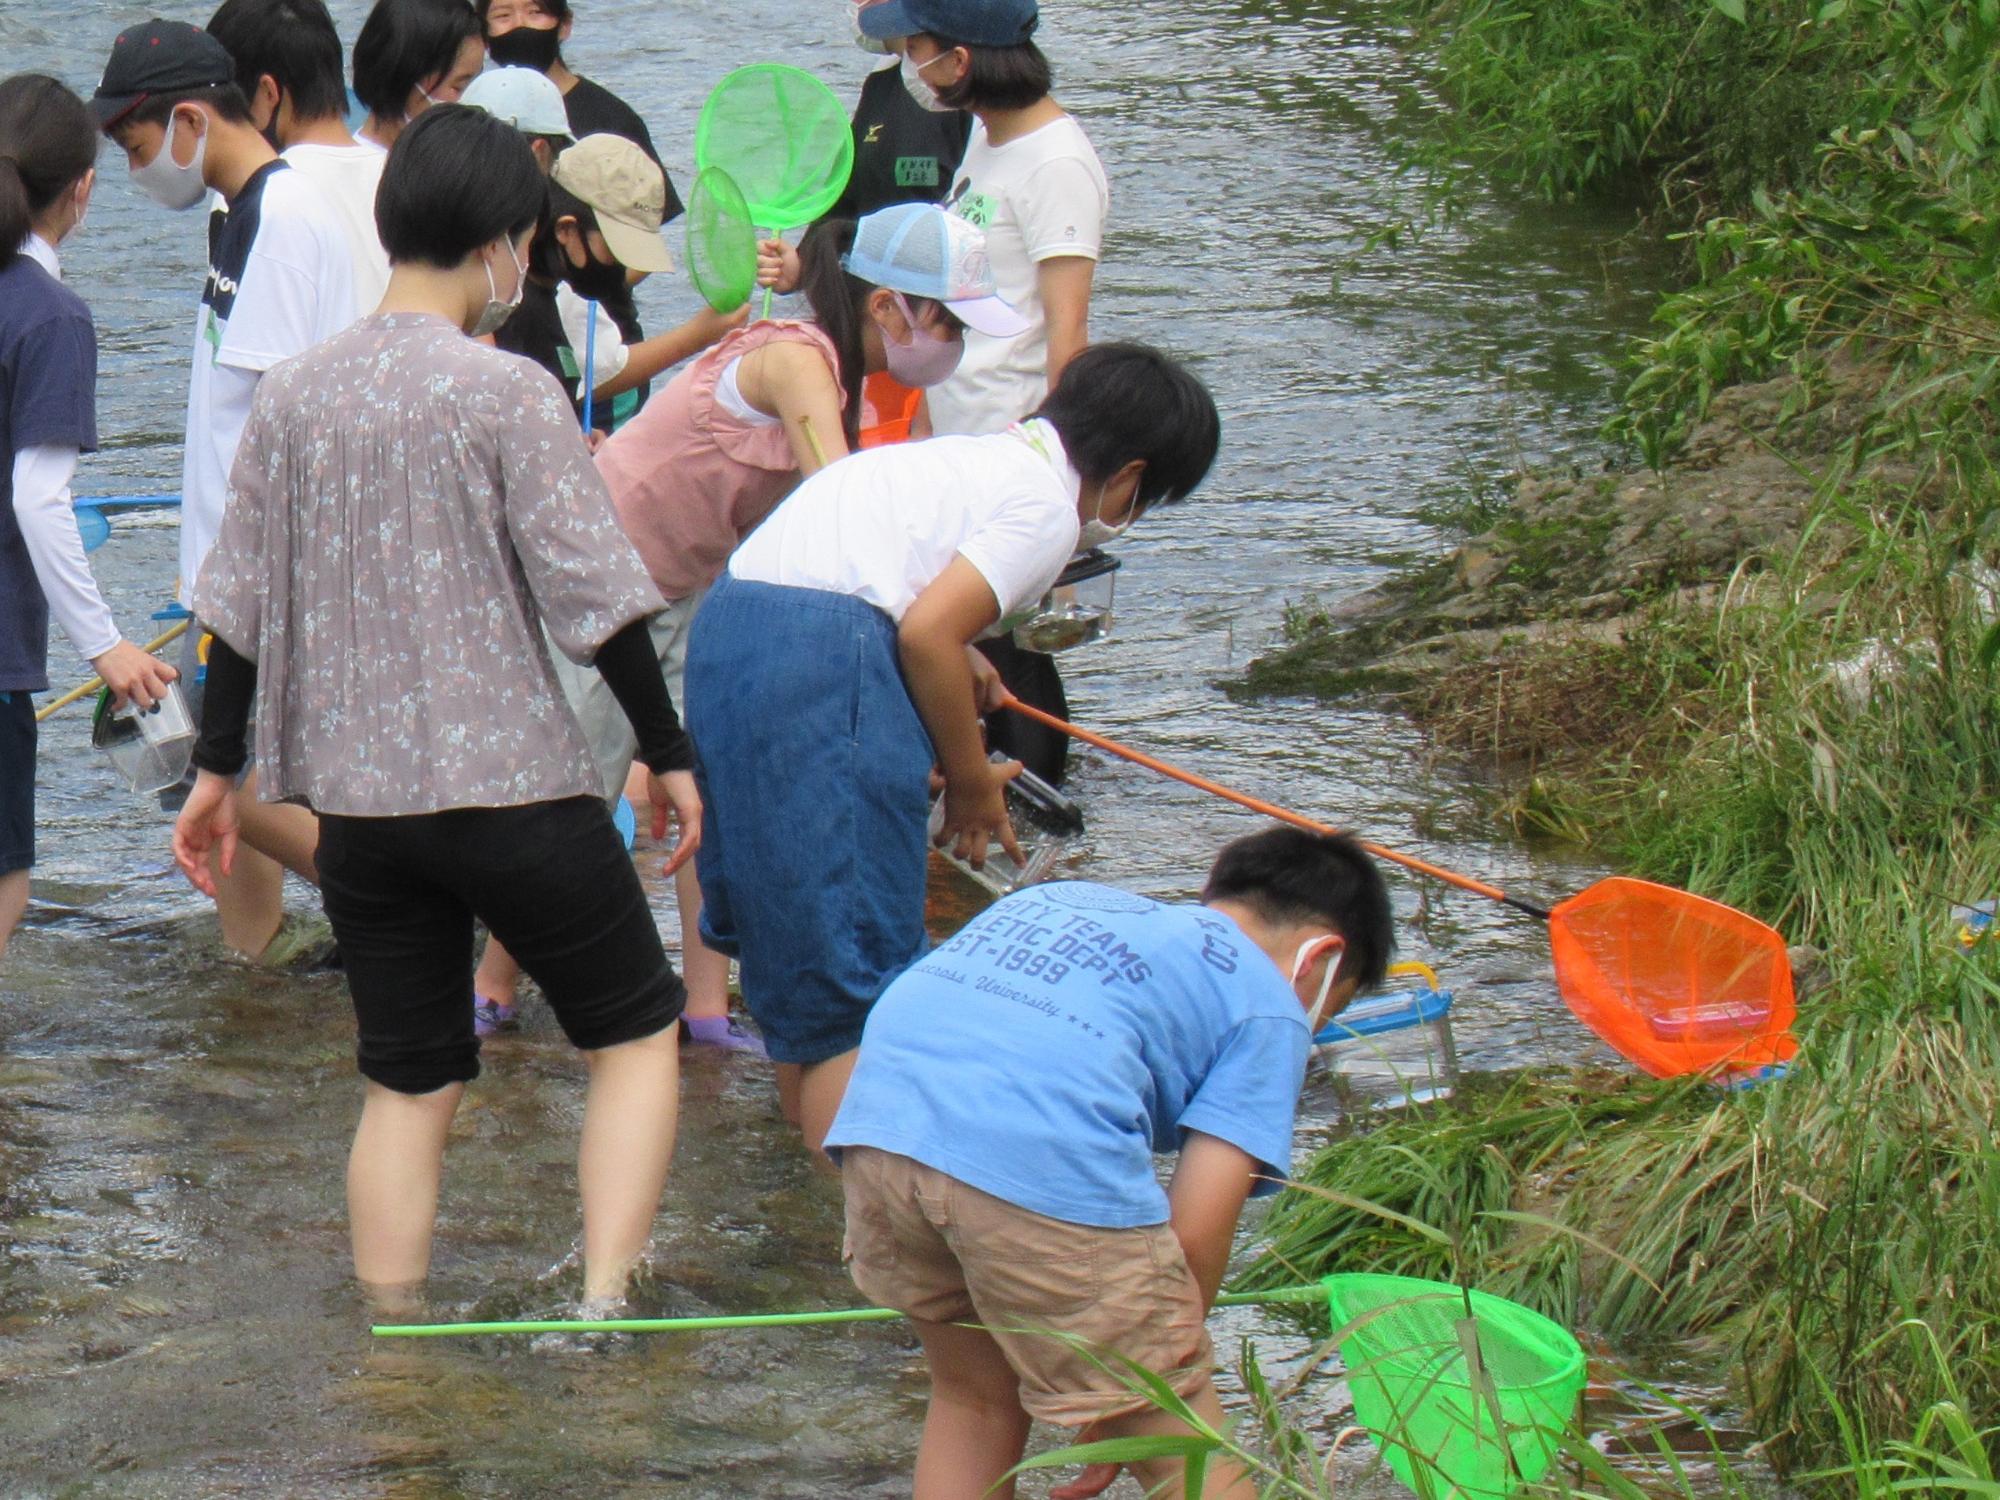 伊沢川で夢中で生き物を探す子どもたちの写真